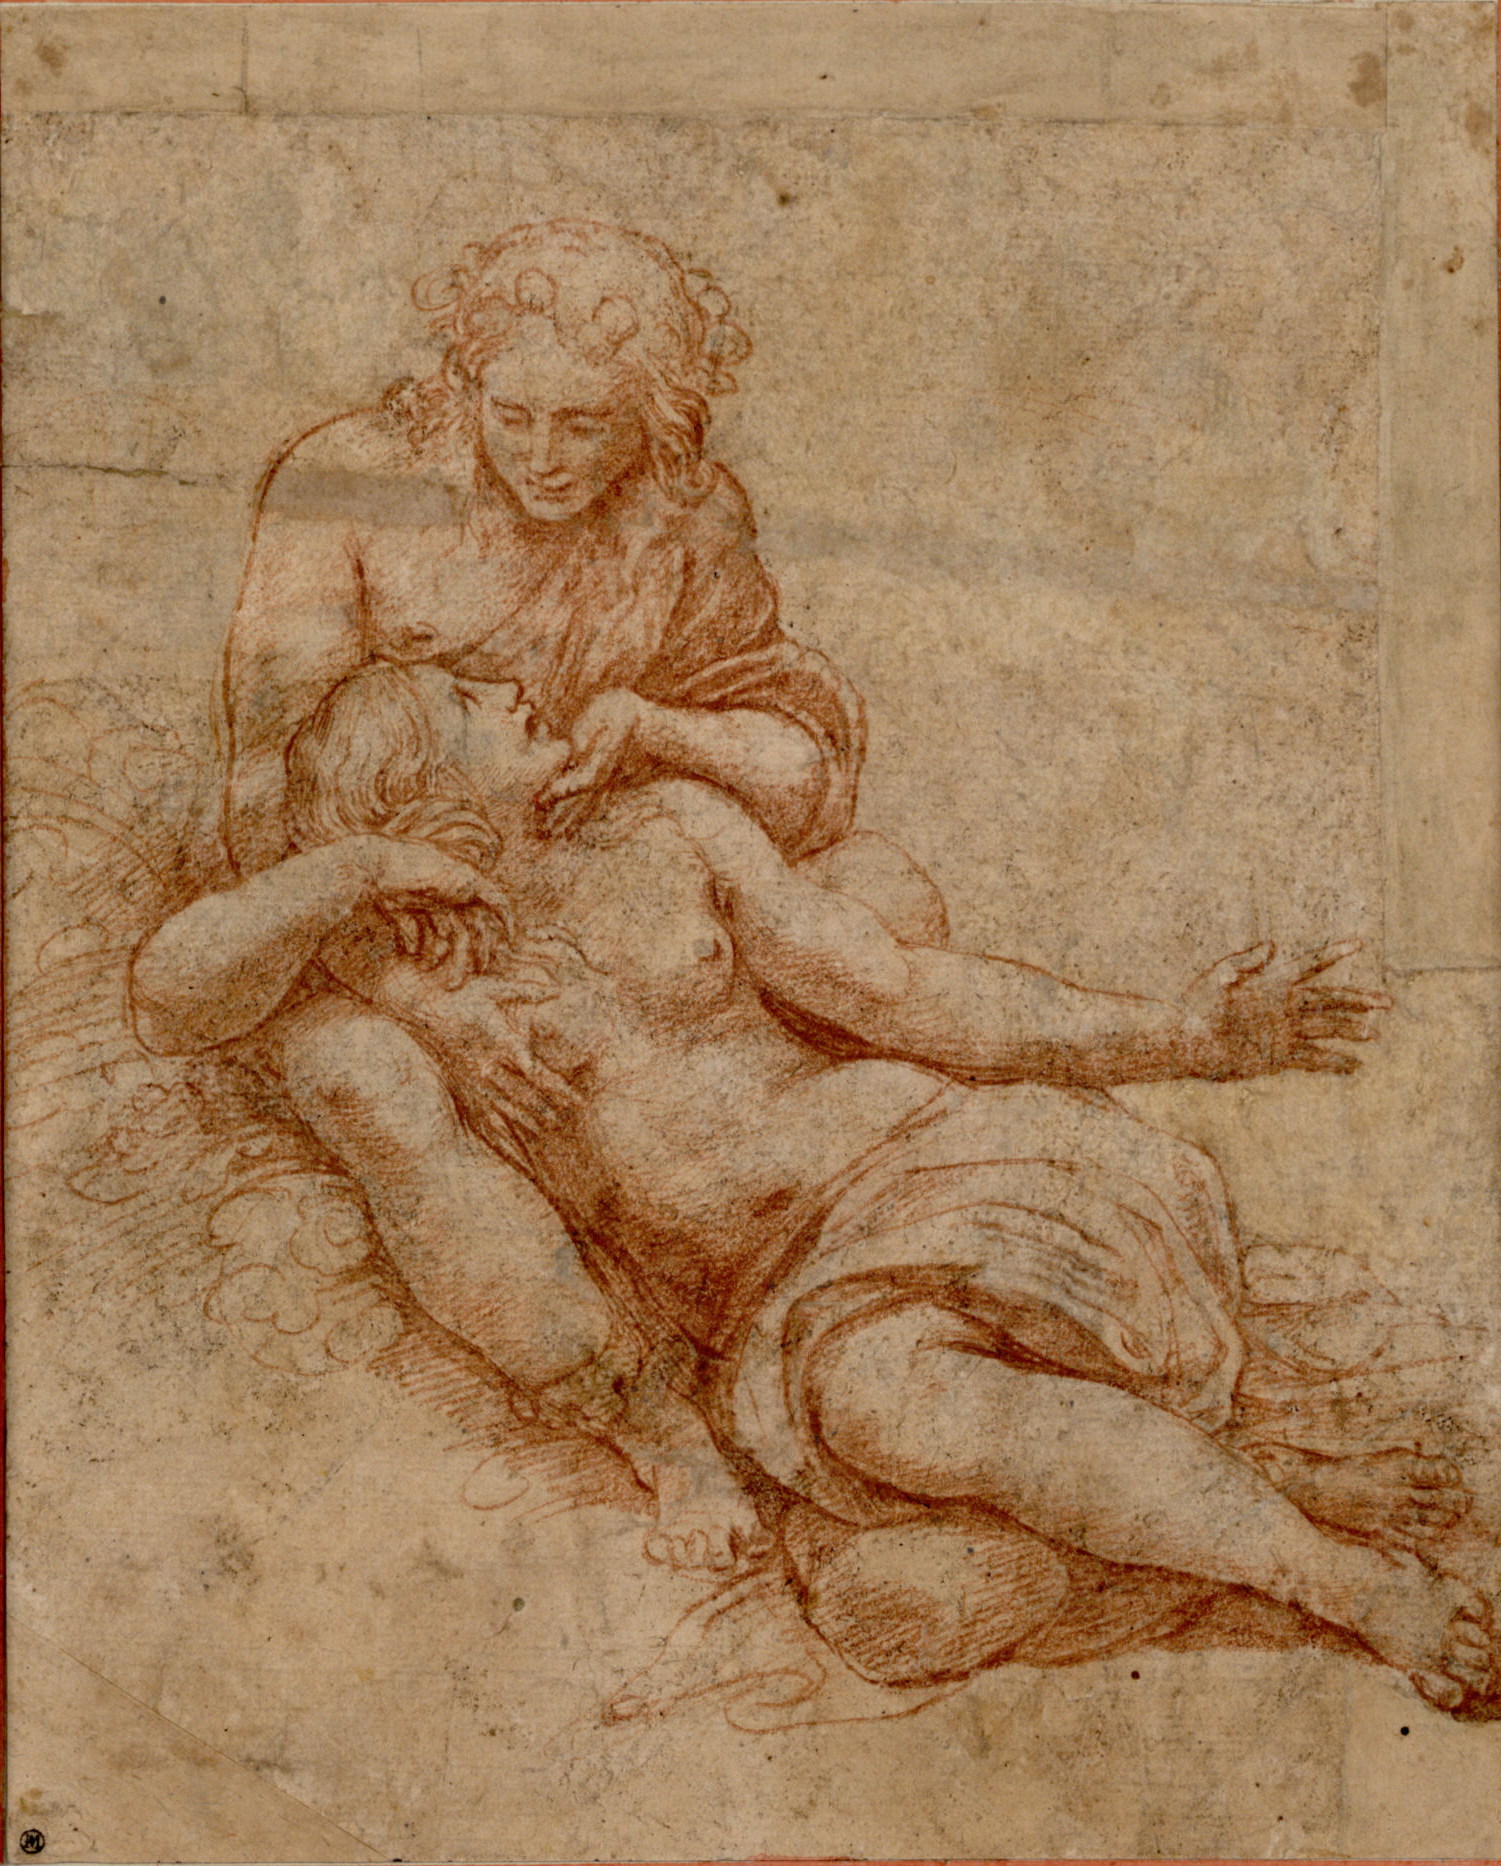 Giulio Romano, Venere e Adone, 1516, disegno a sanguigna. Vienna, Albertina